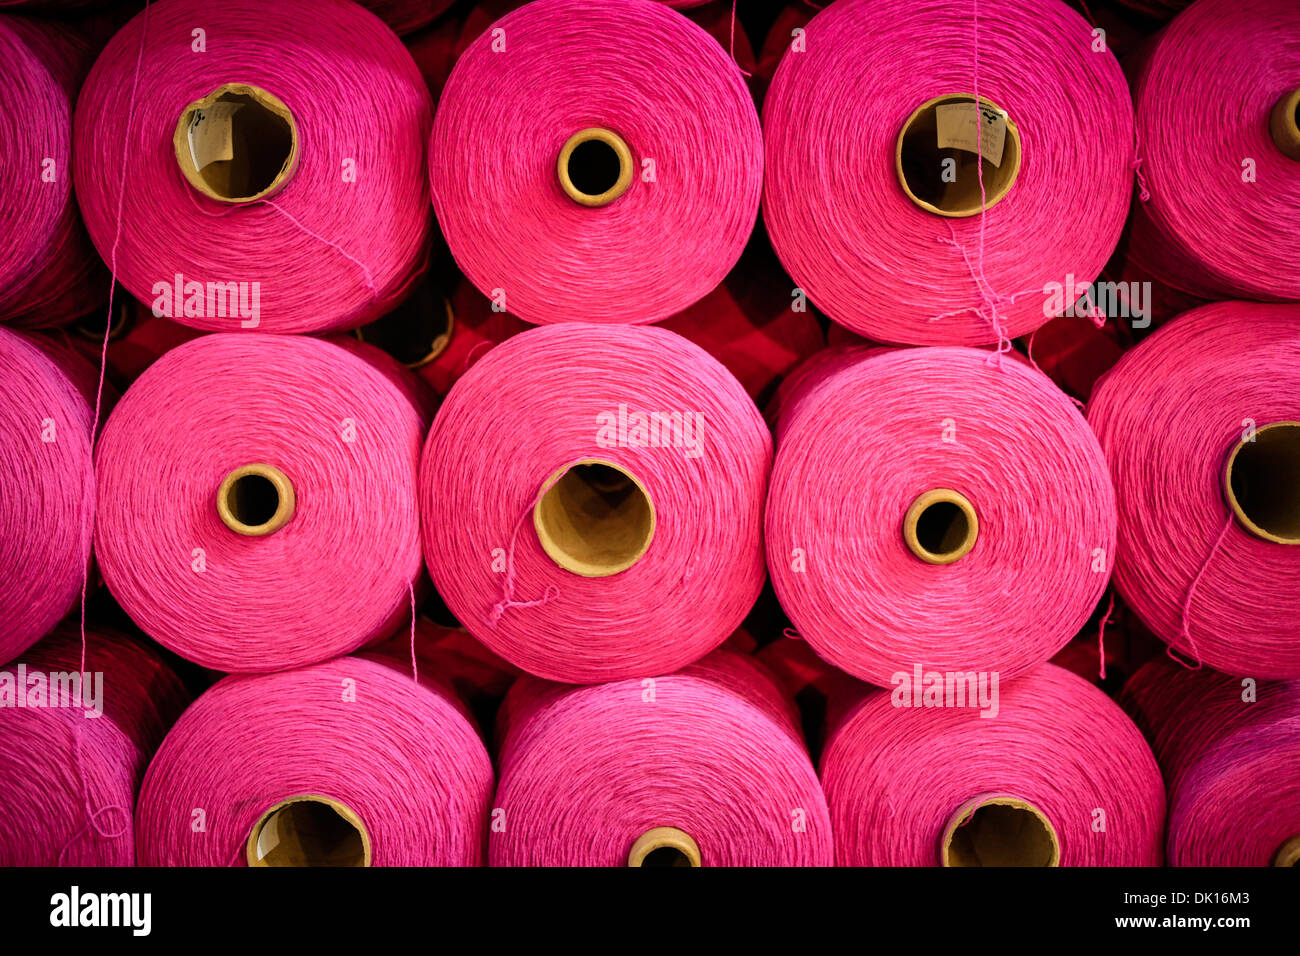 Bobines de ficelle en coton rose vif utilisé dans le tissage de textiles Banque D'Images